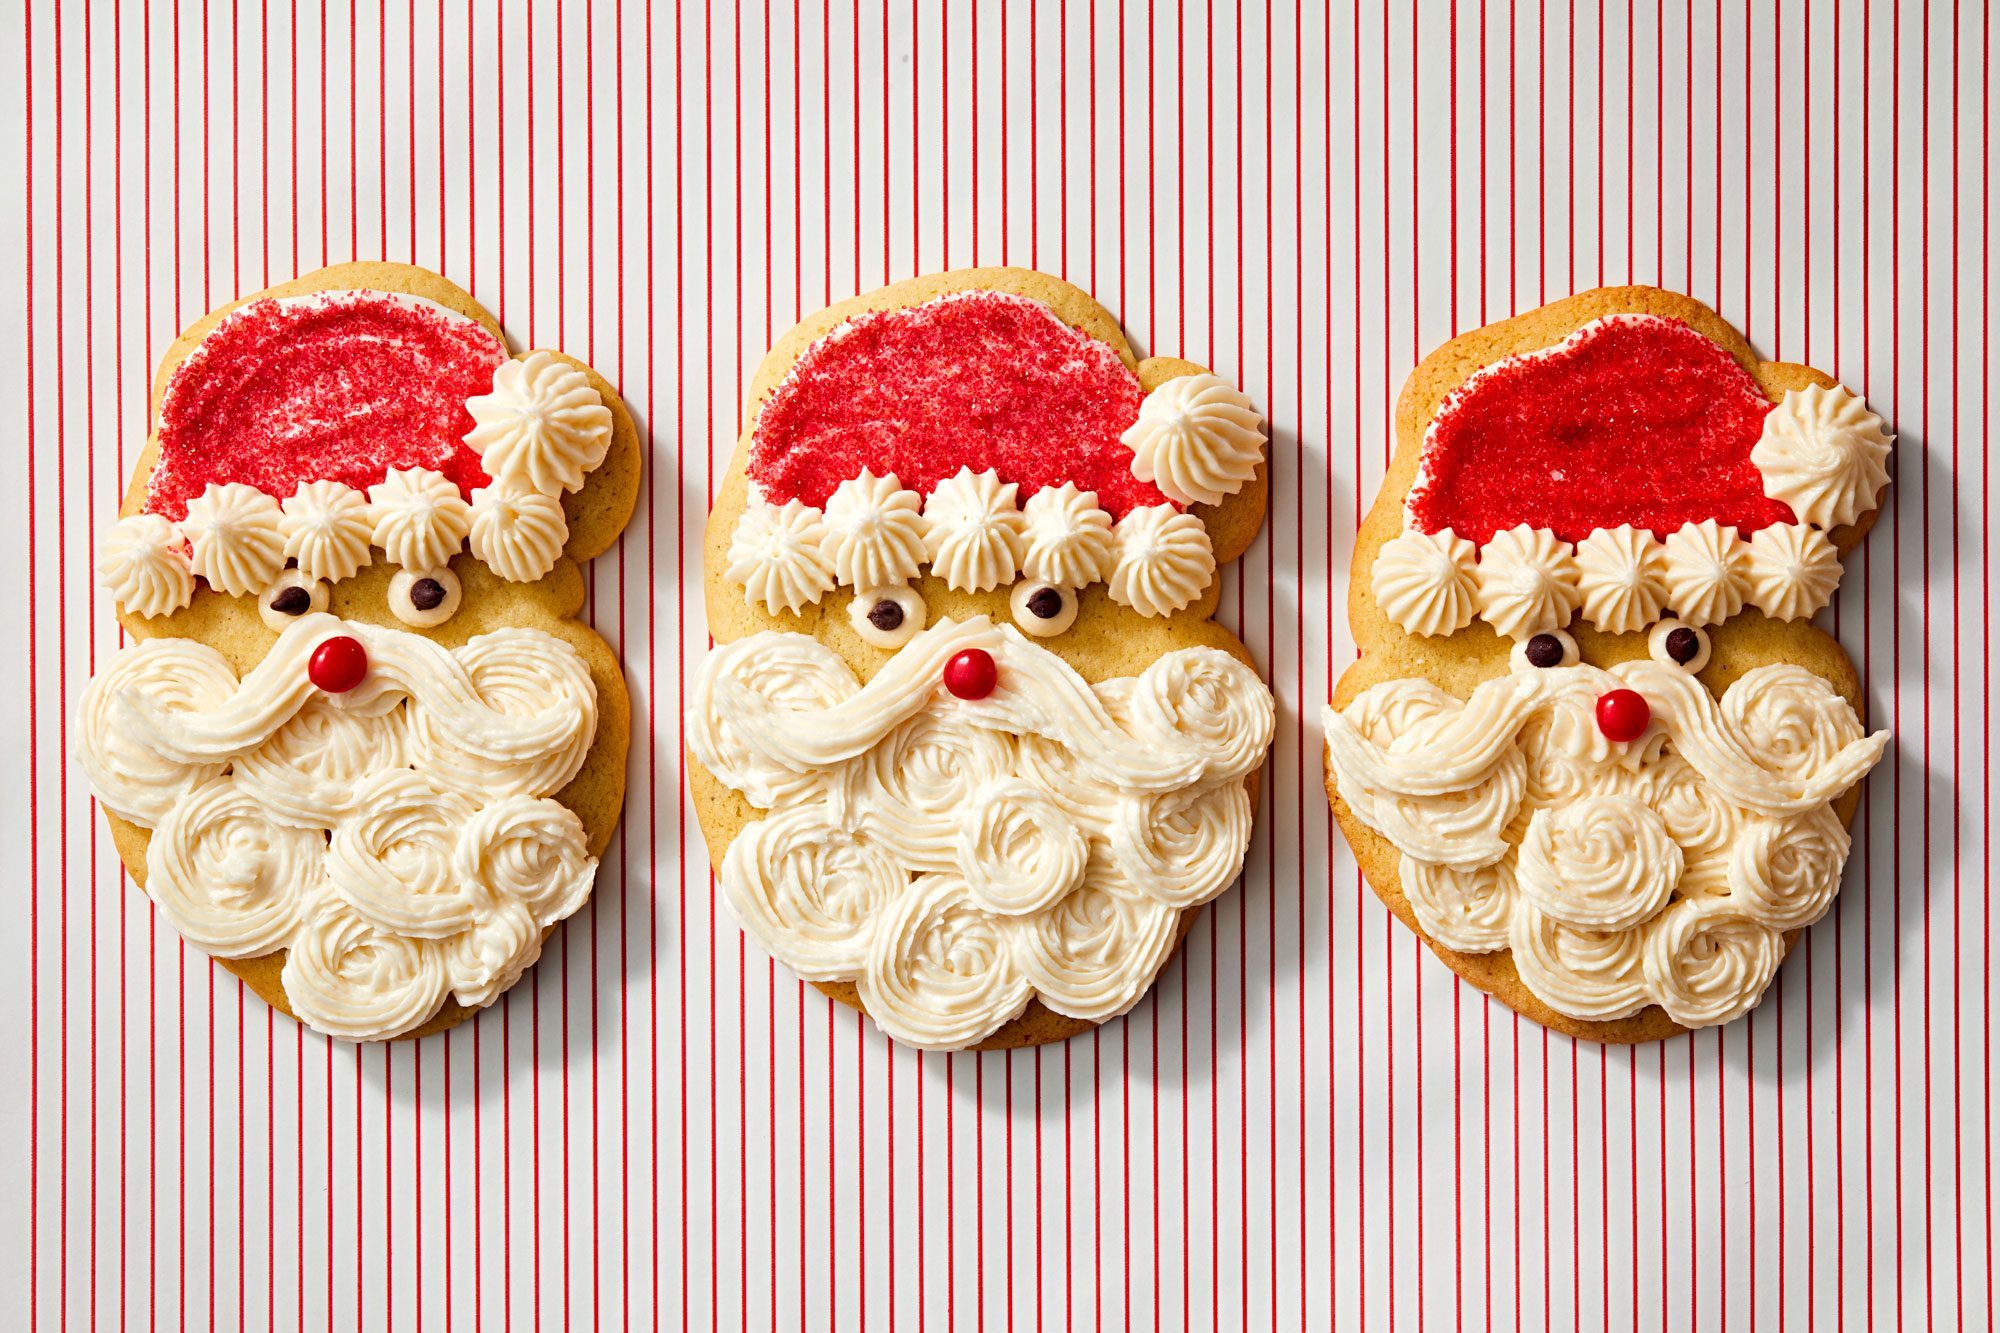 Santa Claus Sugar Cookies for Holidays